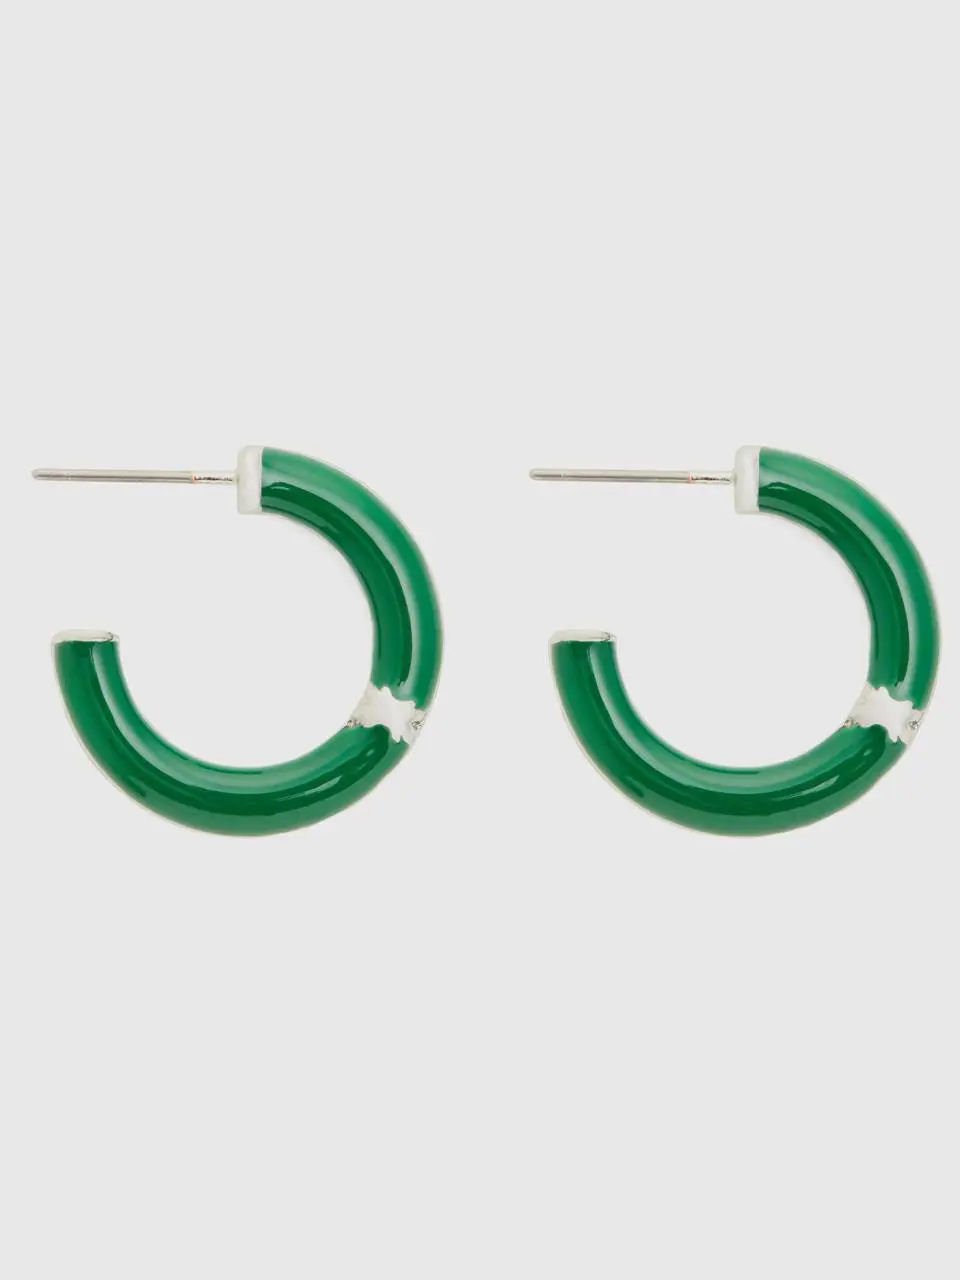 Benetton green c hoop earrings. 1